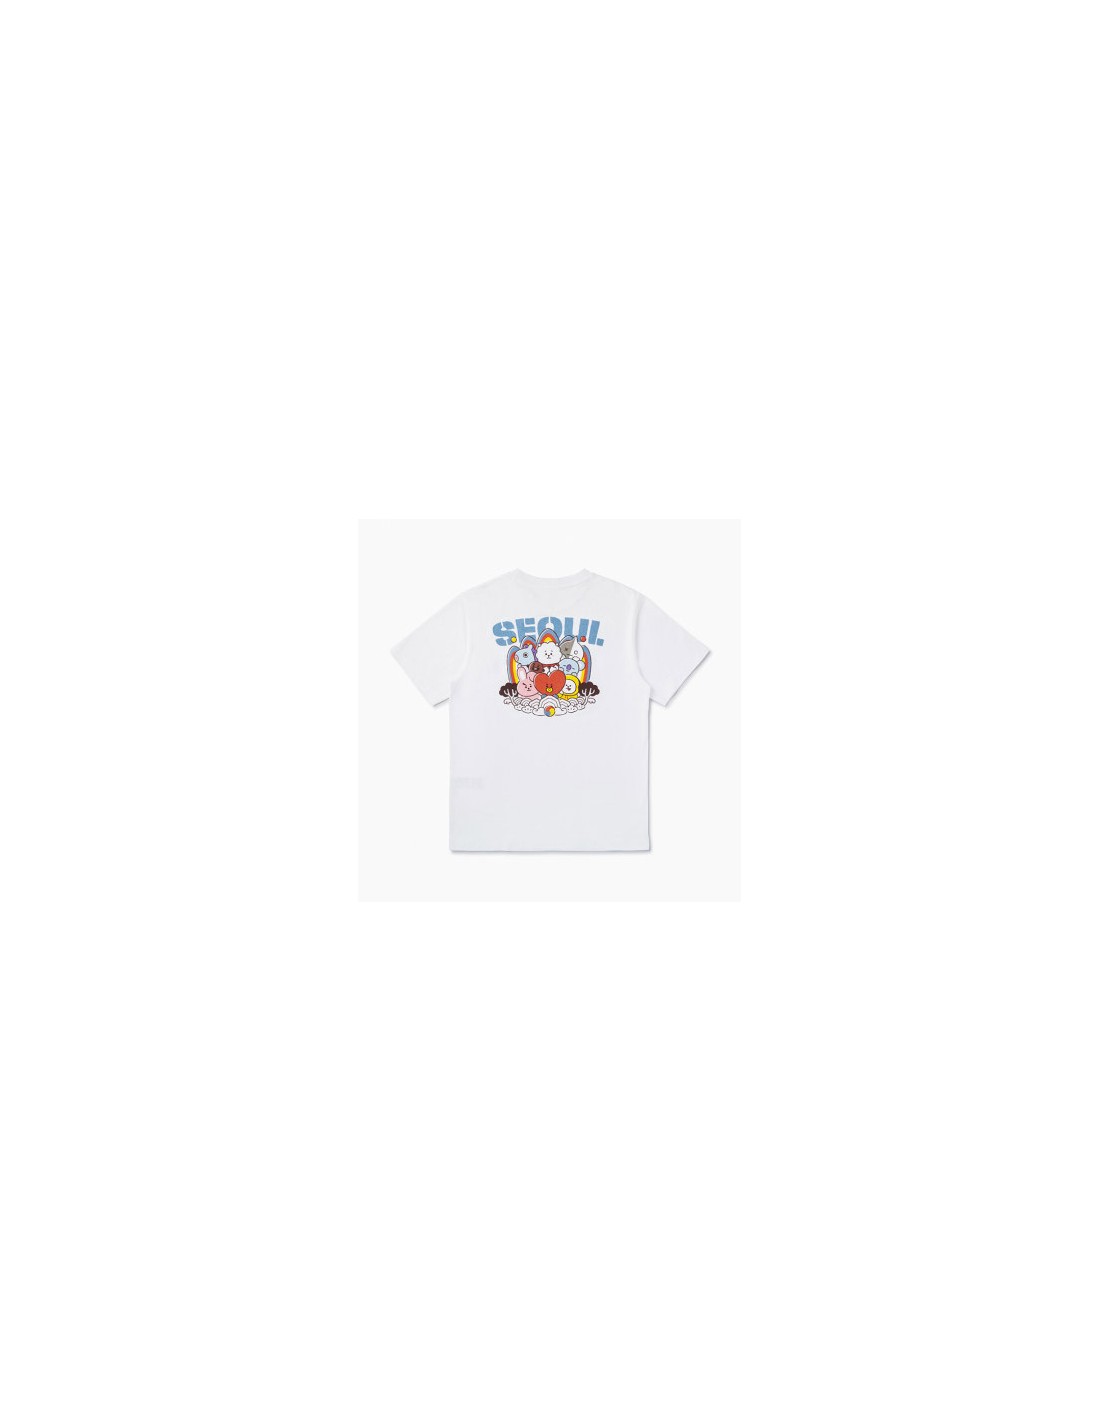 [BT21] BTS. Line Friends Collaboration - City Edition Seoul T-Shirt